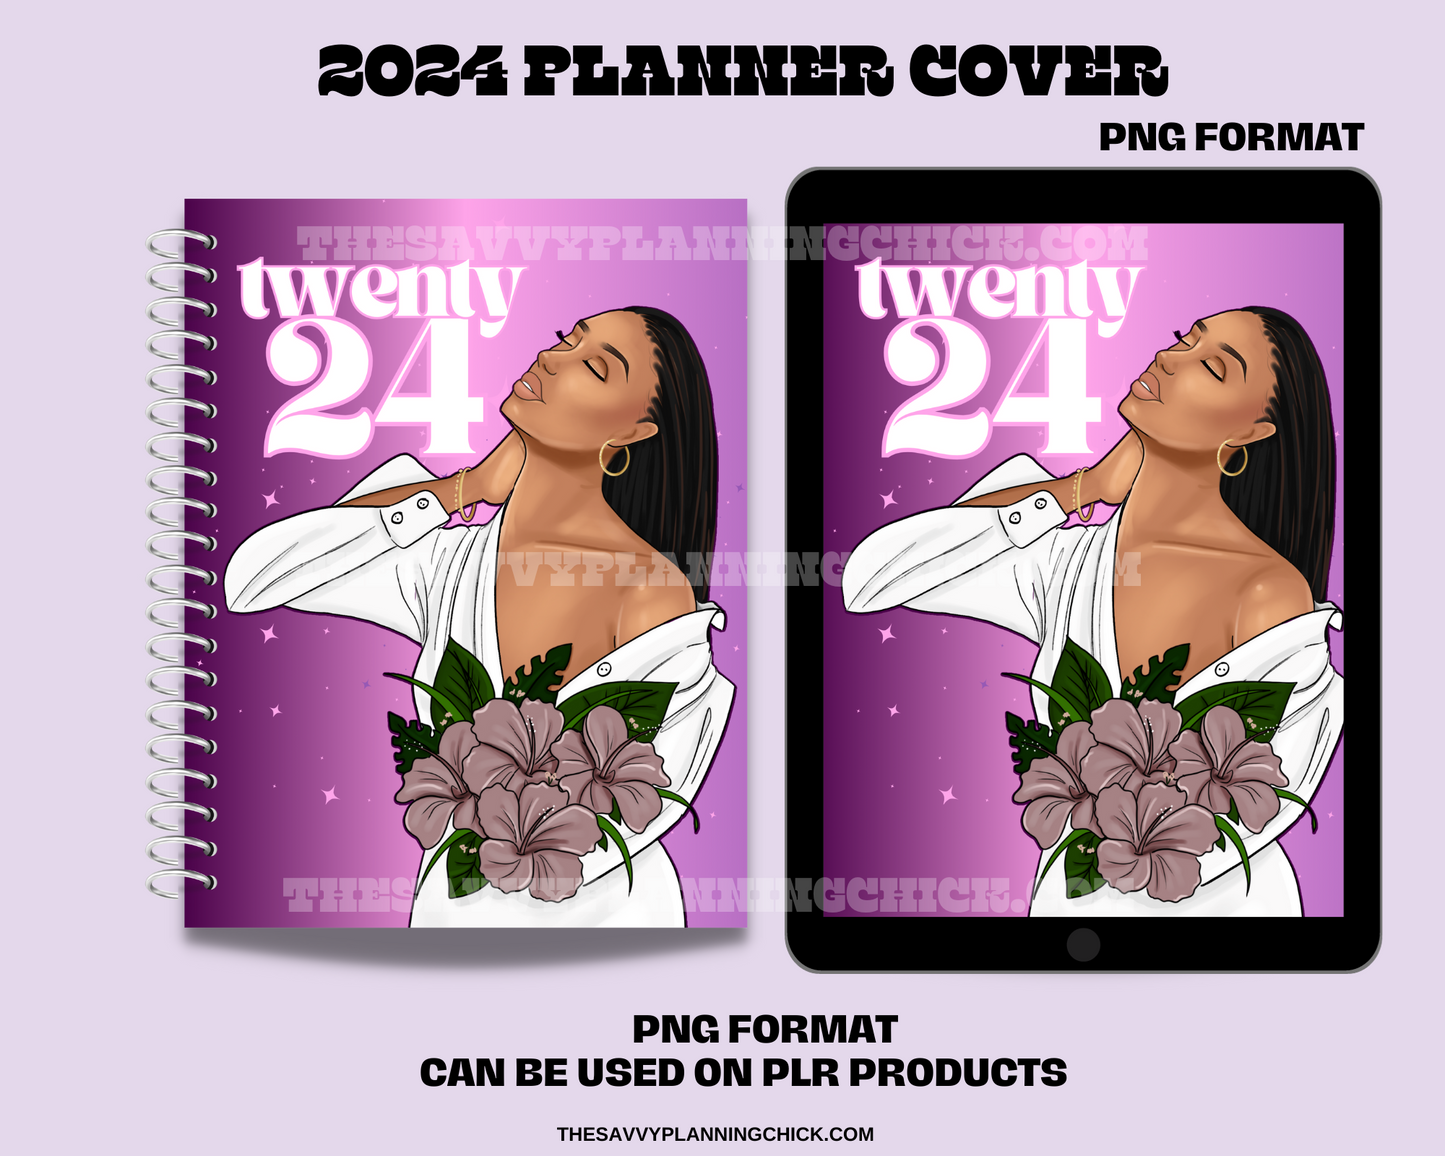 2024 PLANNER COVER-BREATHE LIGHT SKIN